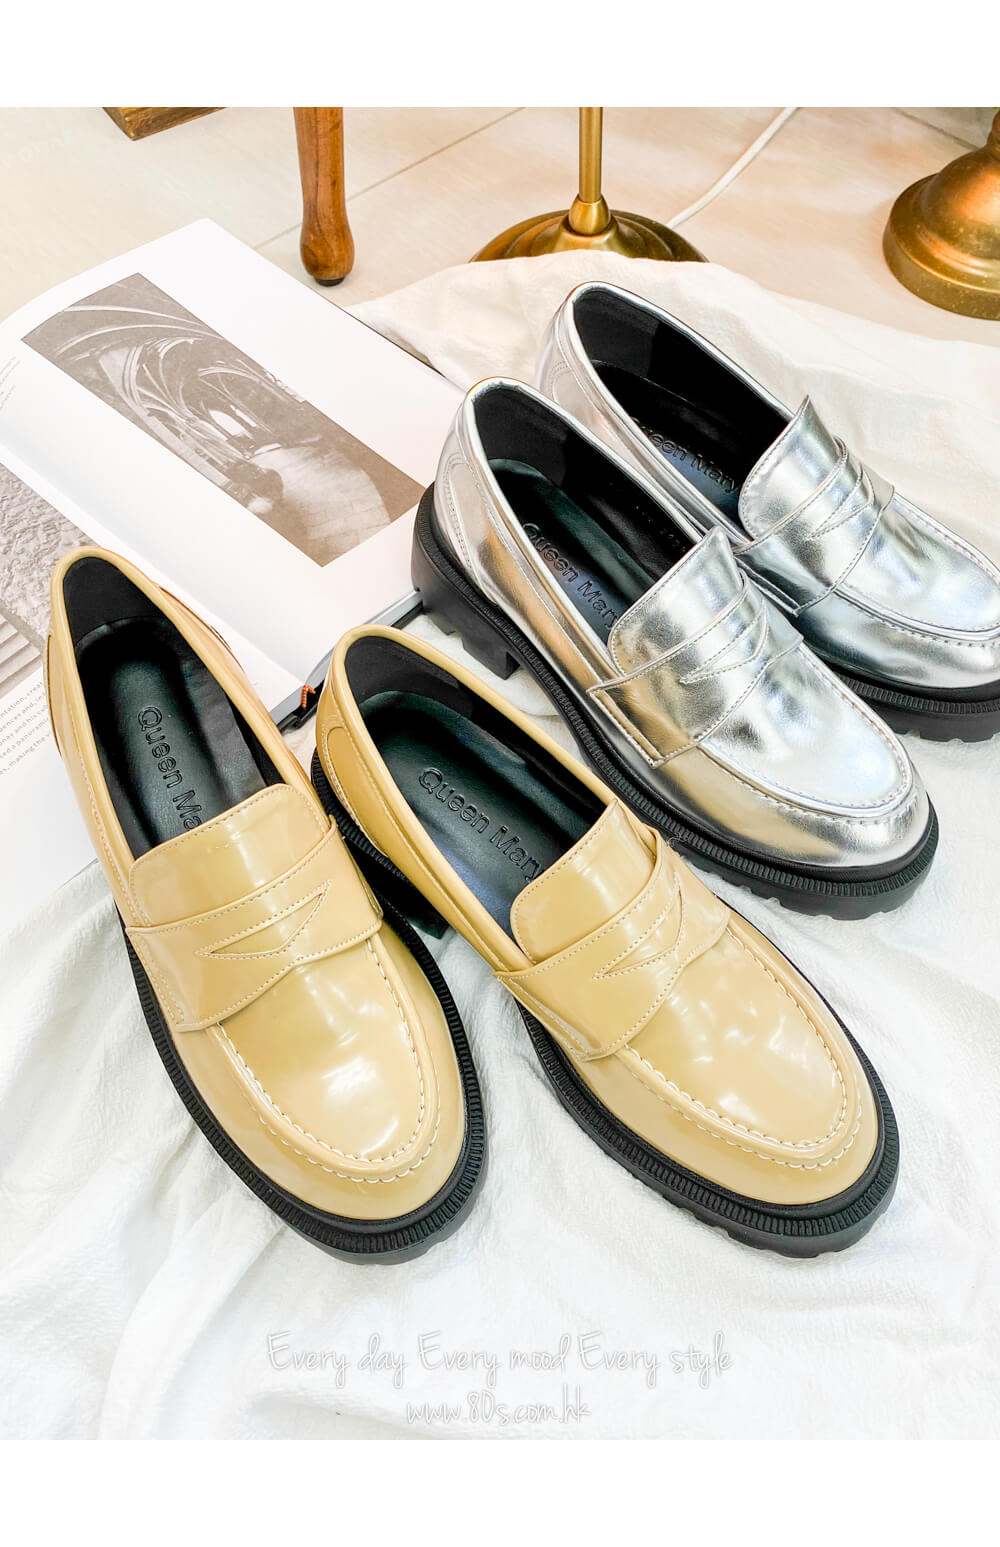 2317-1003- 型格 - 仿皮厚底紳士鞋 (韓國) 